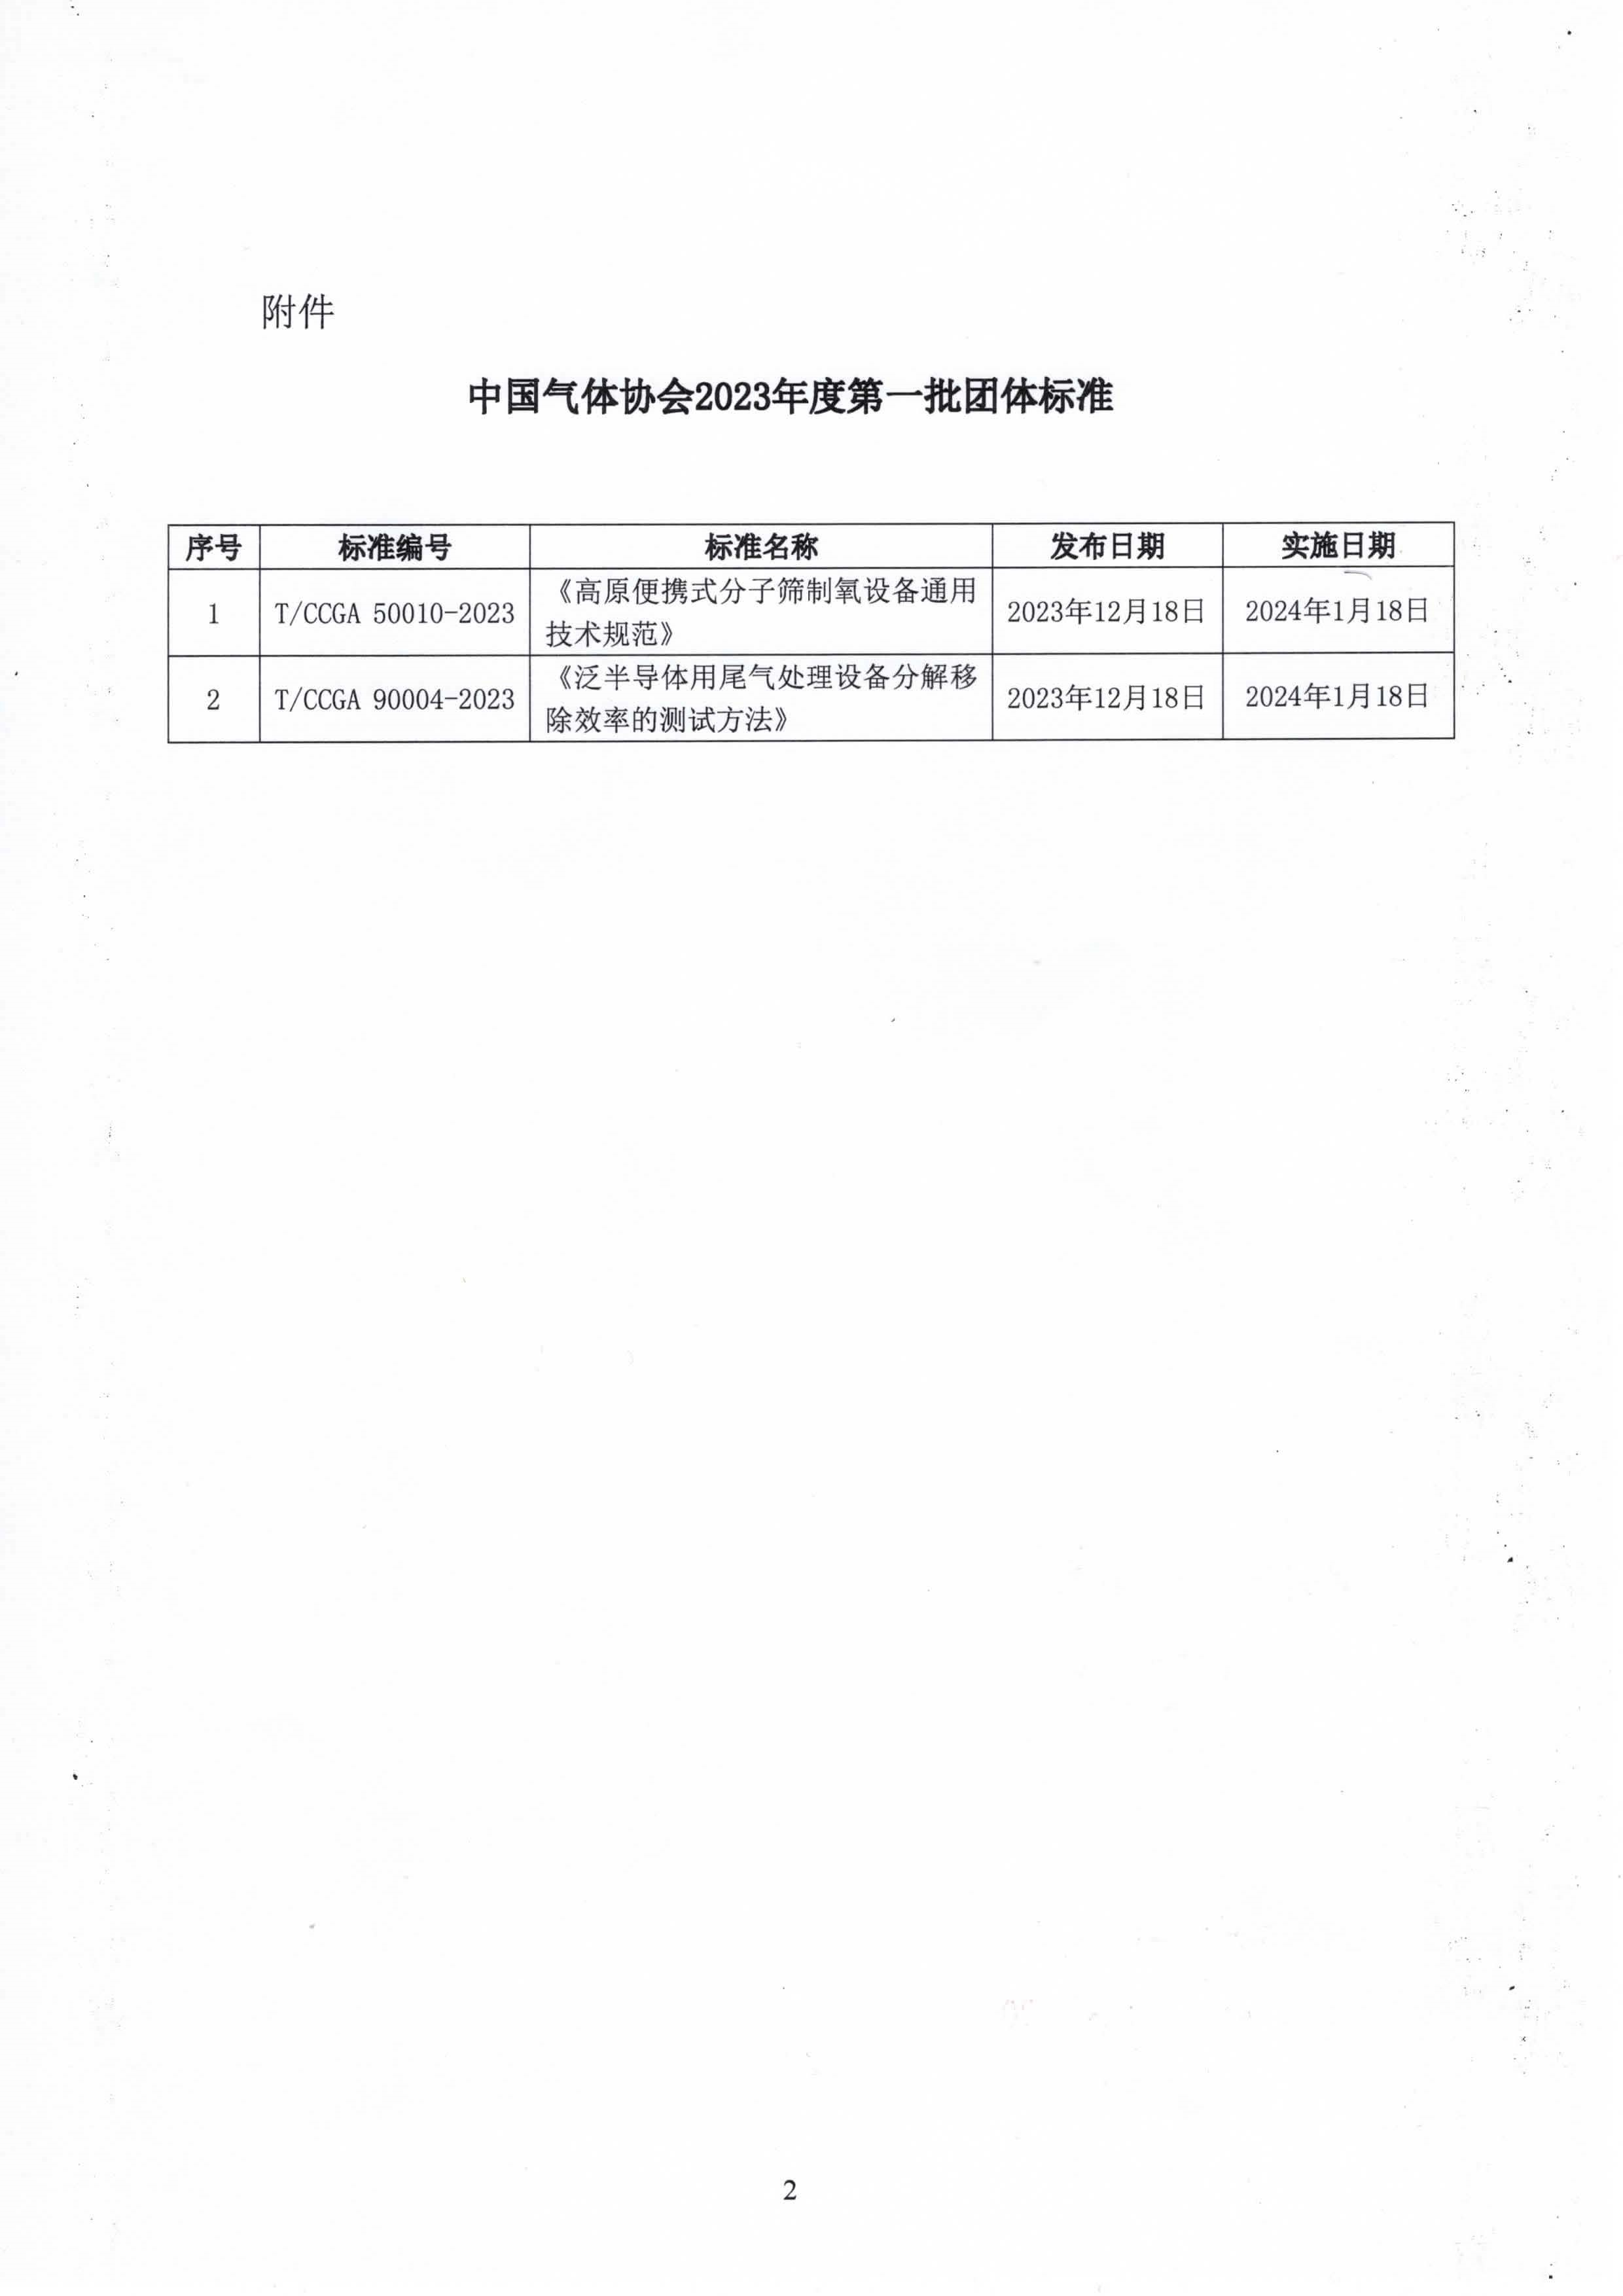 中国气体协会团体标准的公告(图2)